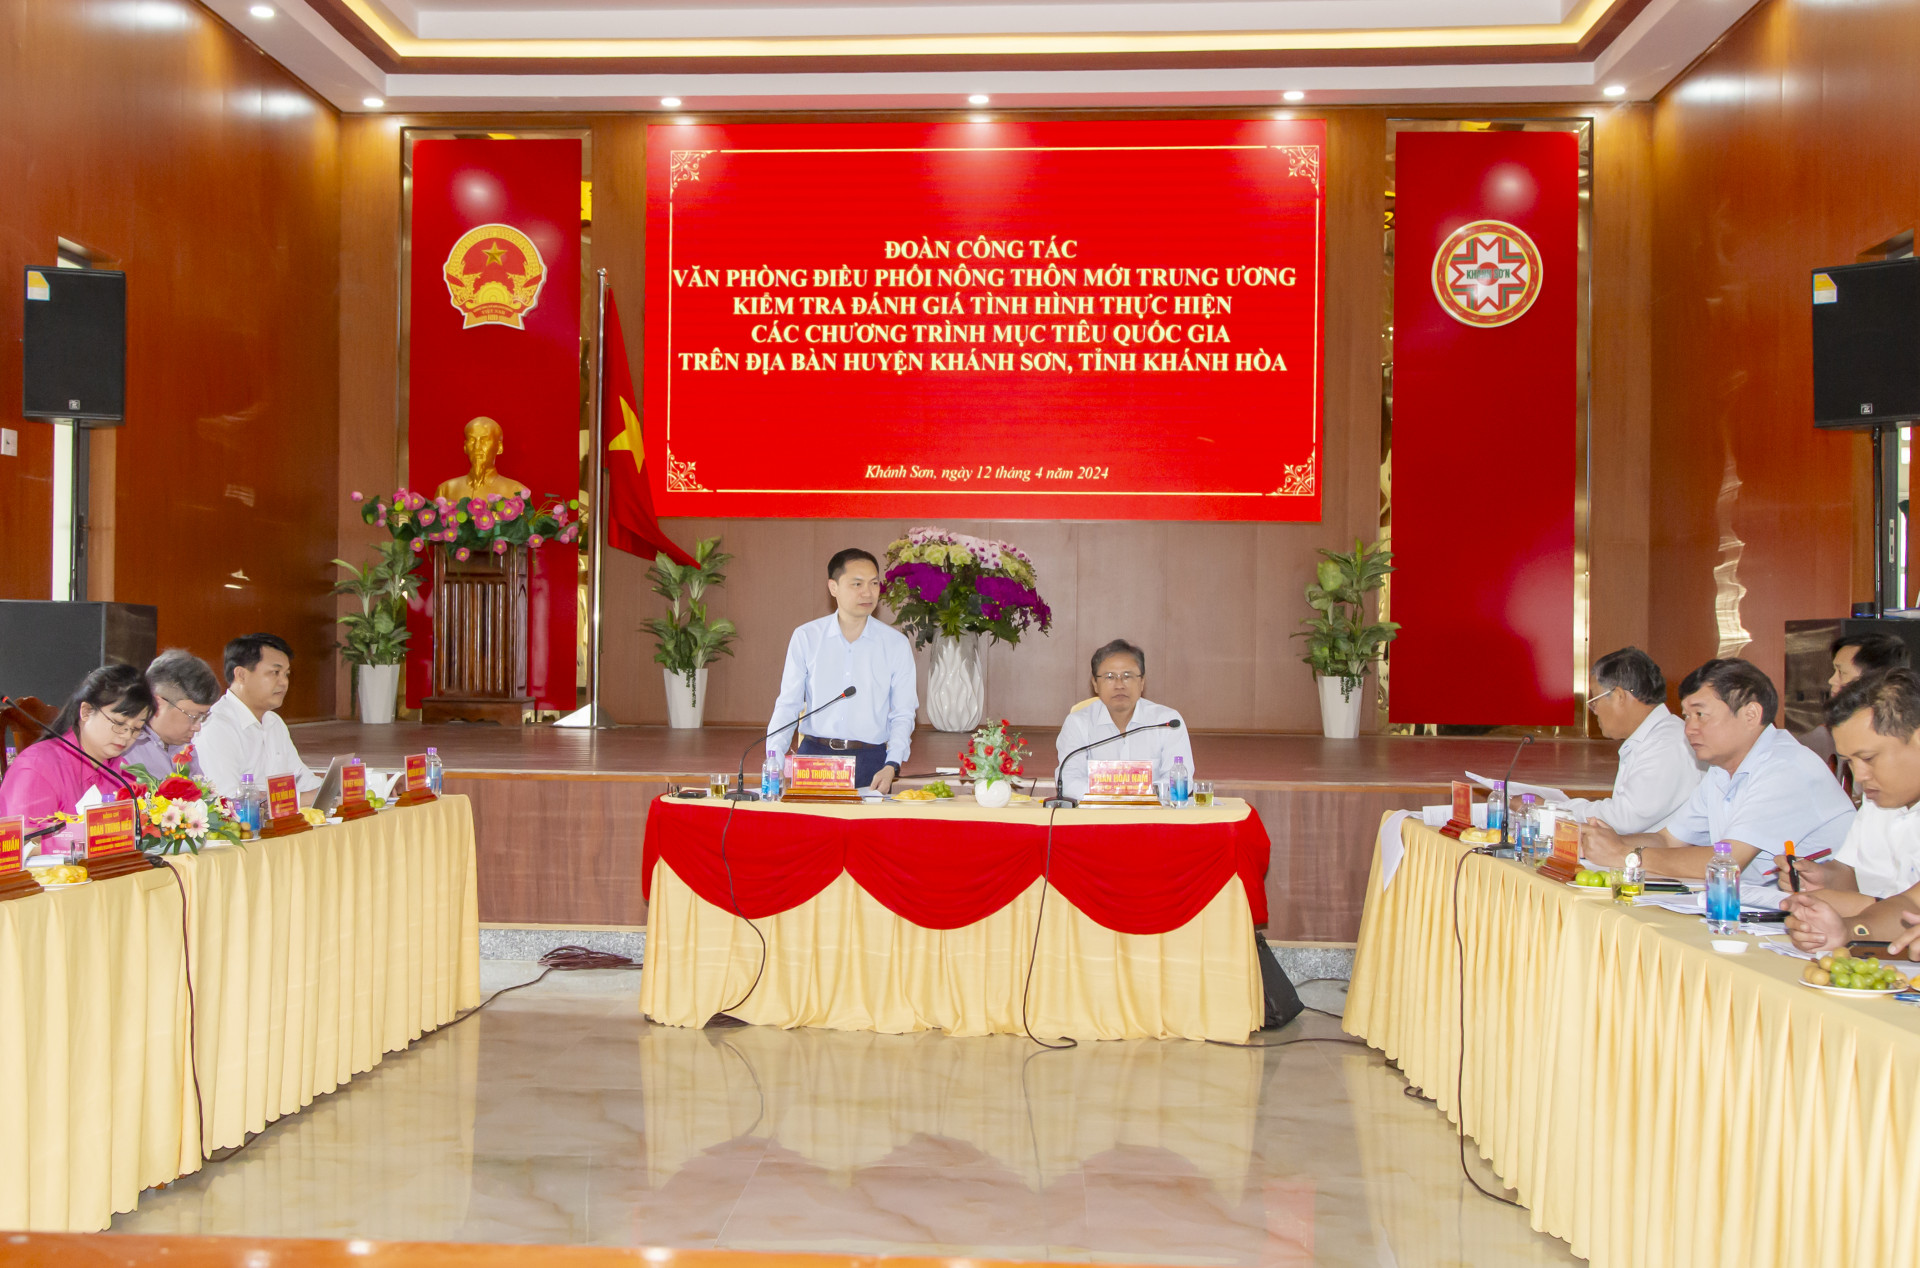 Đoàn công tác làm việc với UBND tỉnh và huyện Khánh Sơn về các chương trình mục tiêu quốc gia.